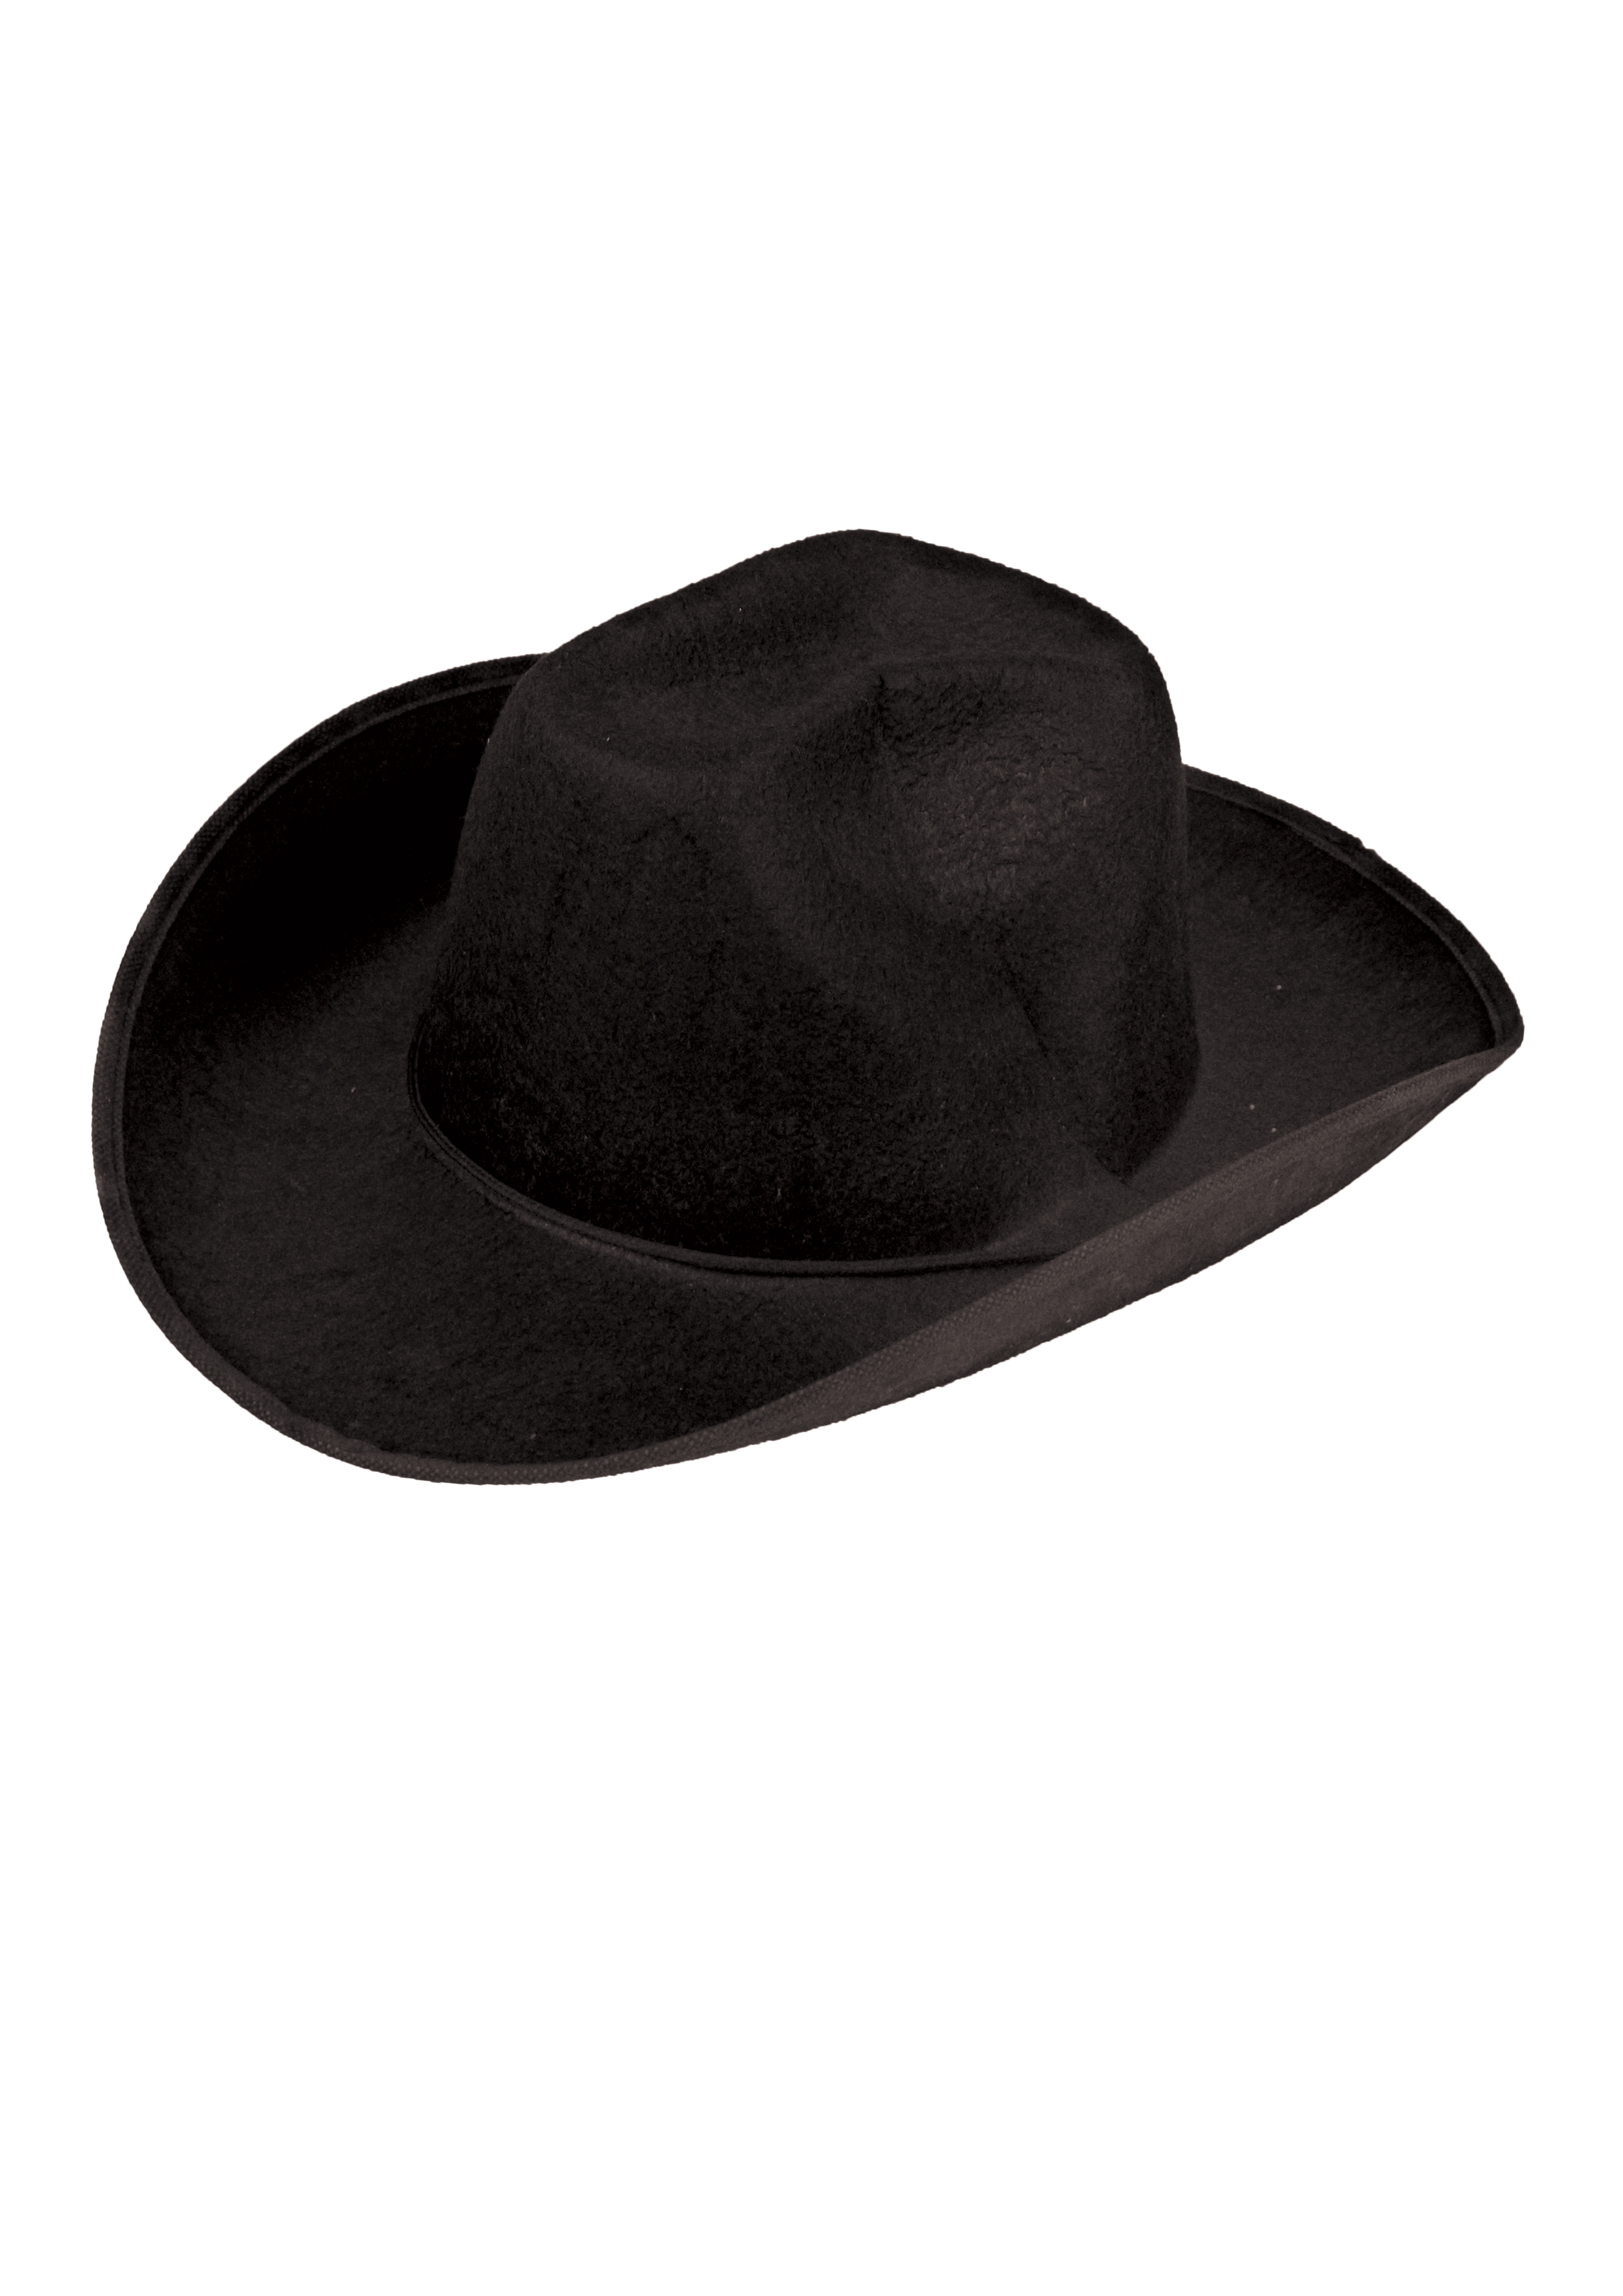 Adult Black Felt hat